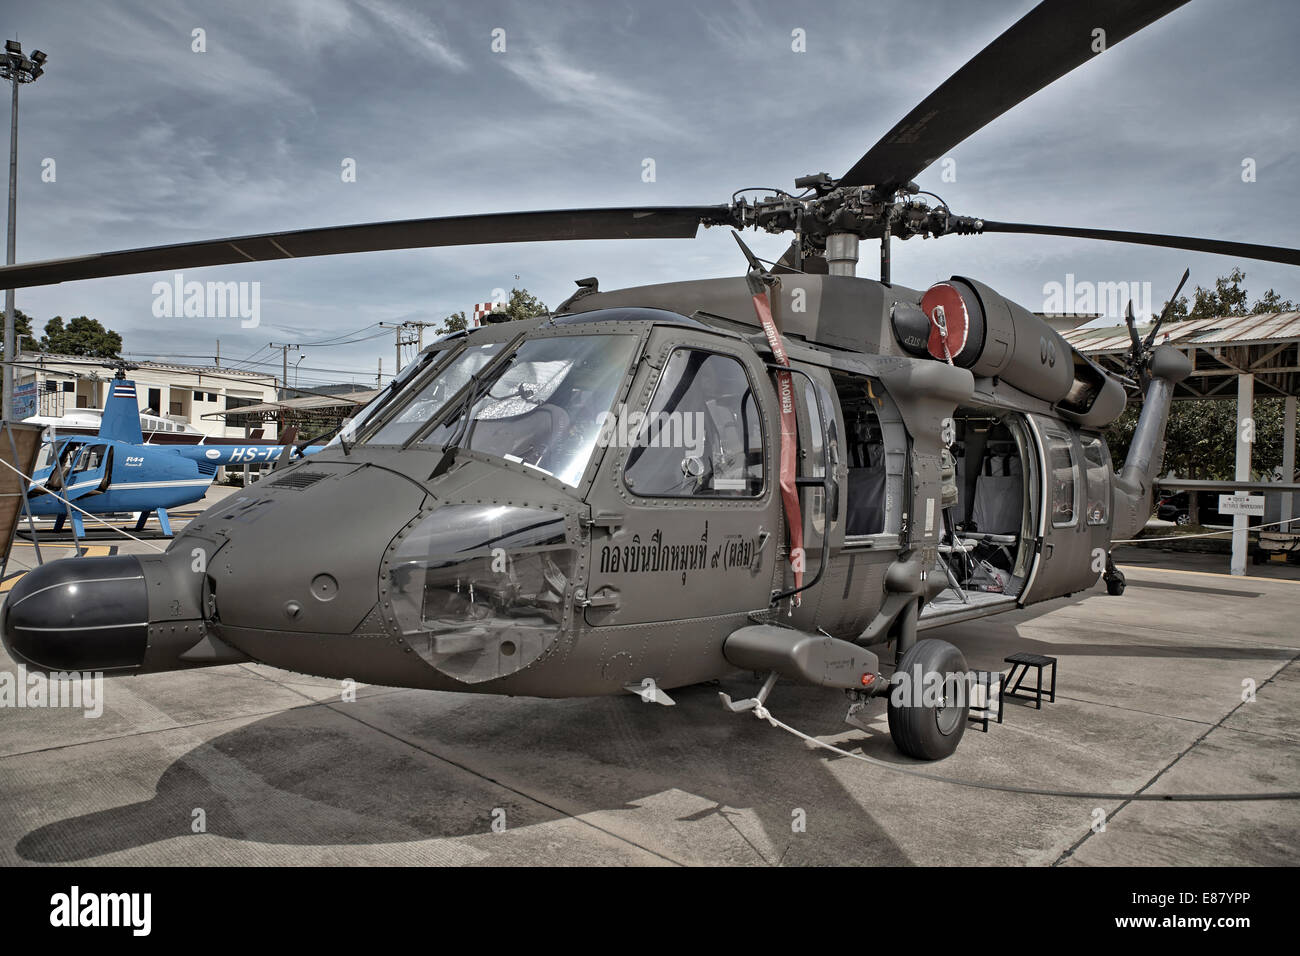 Hélicoptère militaire Sikorsky utilisé par les forces armées thaïlandaises. Thaïlande S. E. Asie. Hélicoptère stationné Banque D'Images